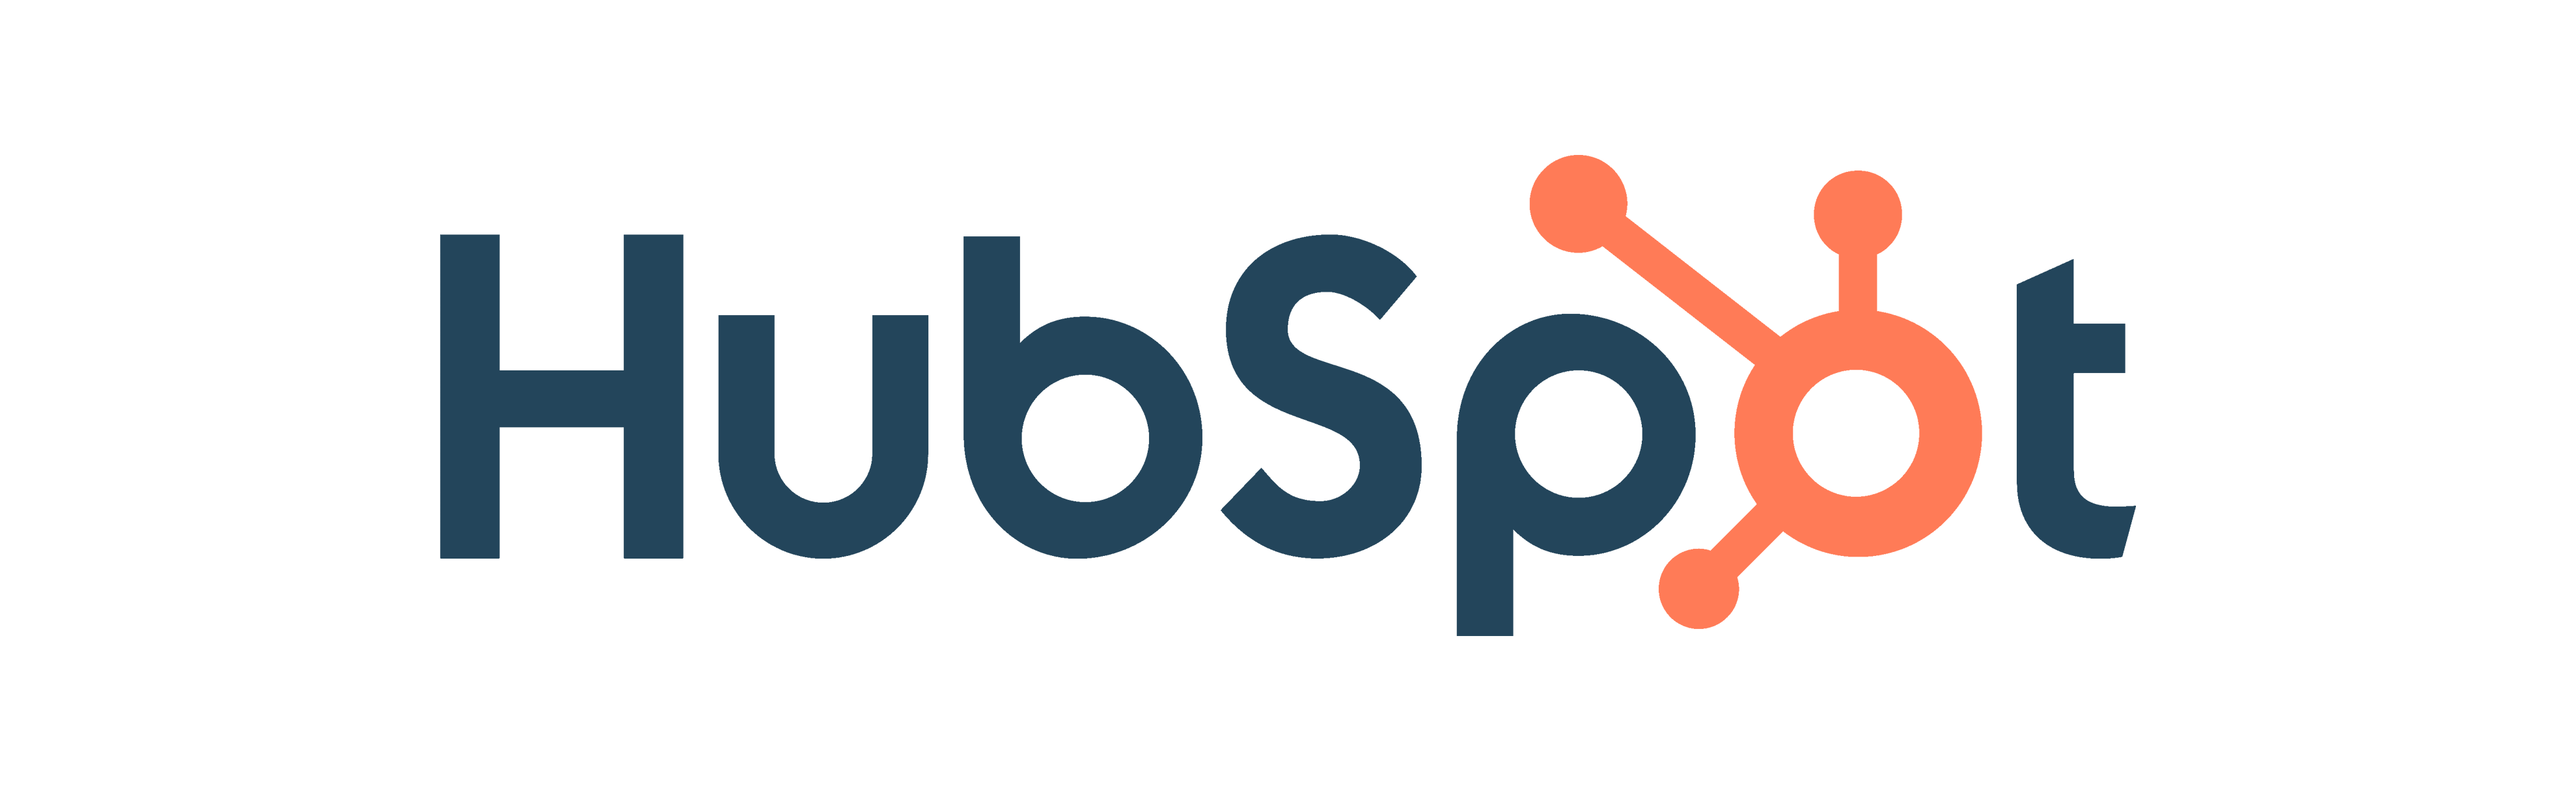 HubSpot-Logo-4.png